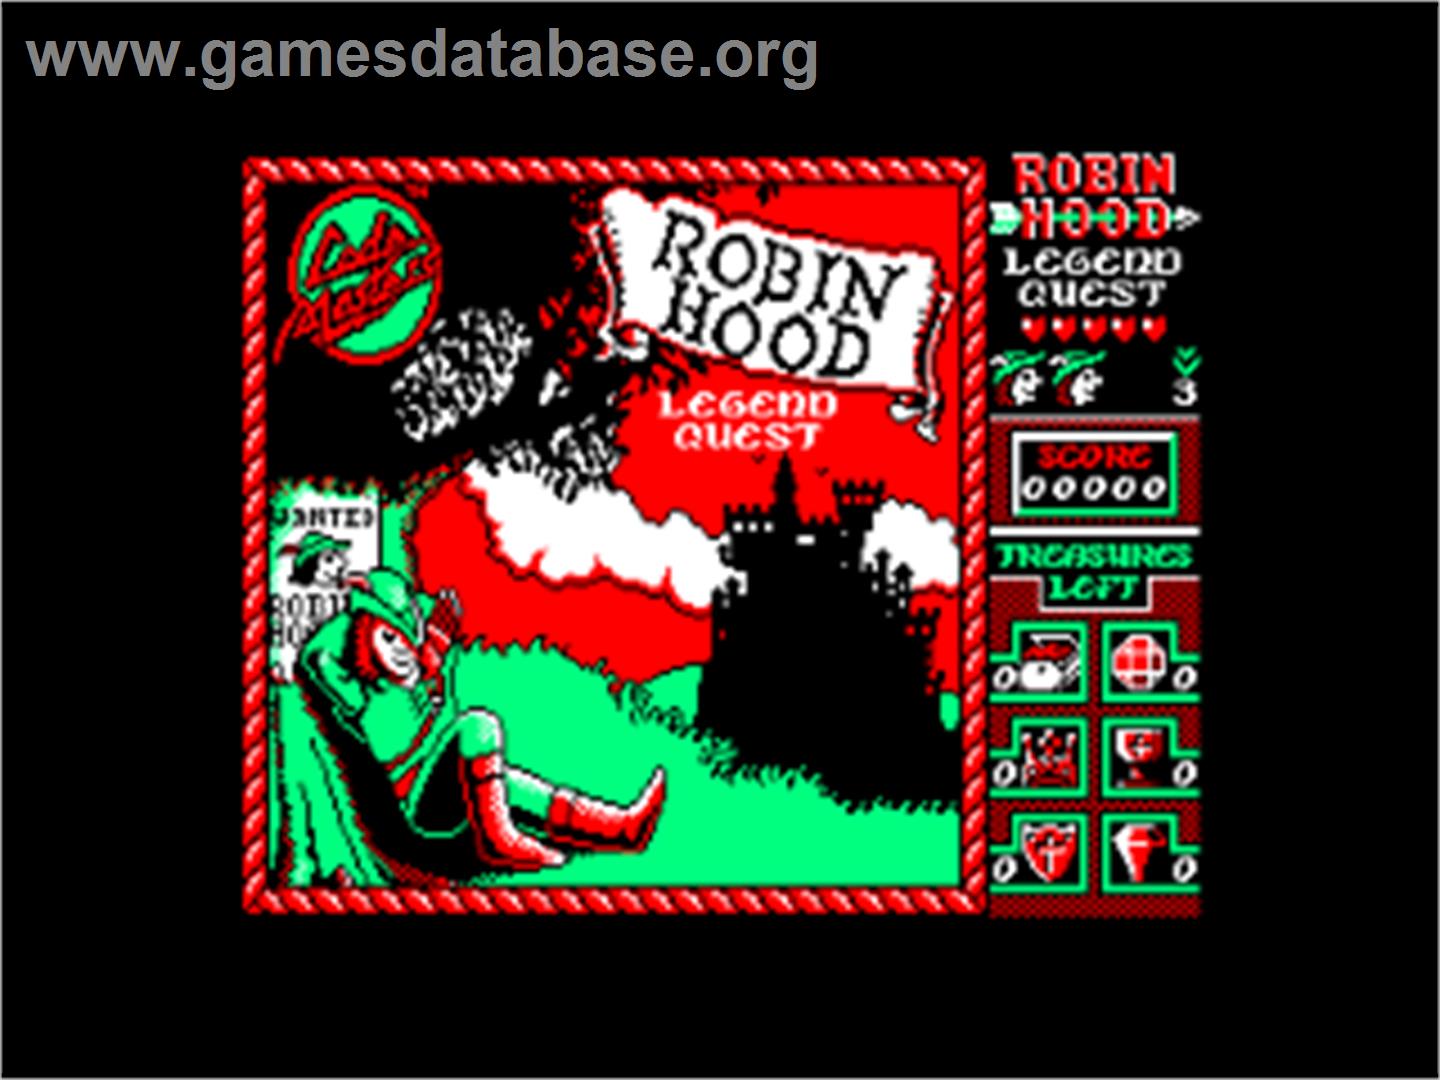 Robin Hood: Legend Quest - Amstrad CPC - Artwork - Title Screen